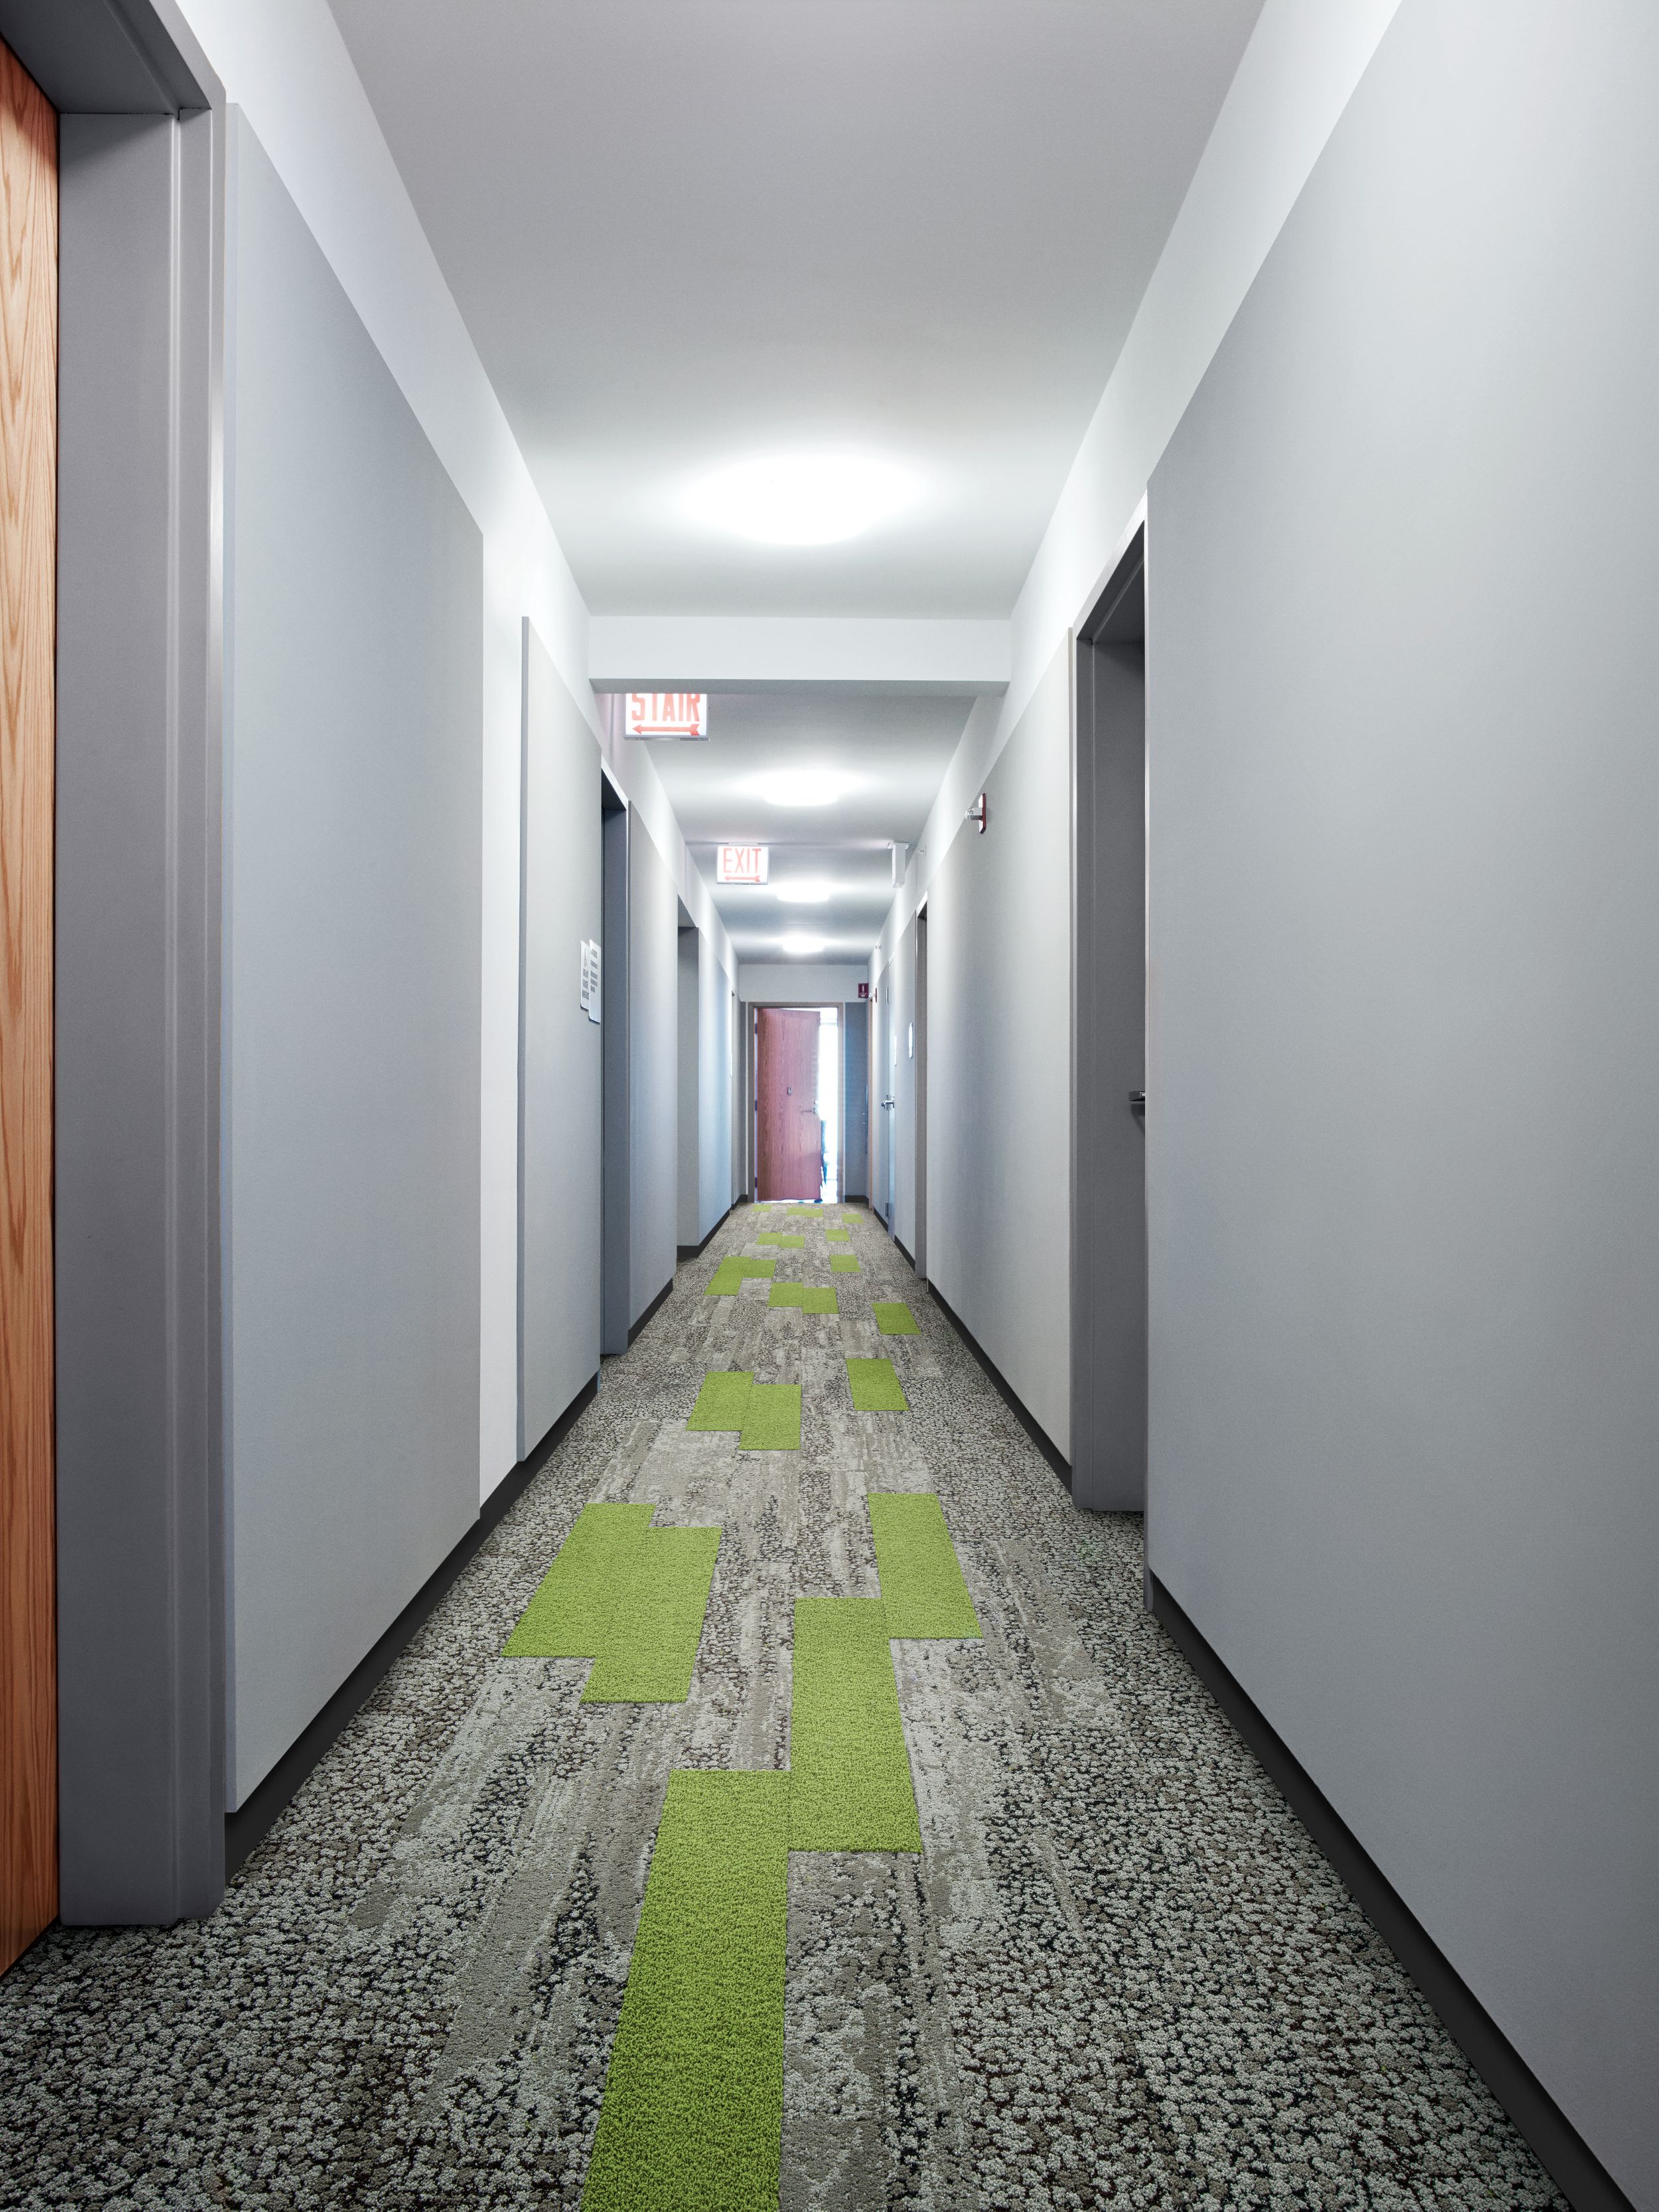 Interface HN830 and HN850 plank carpet tiles in long corridor with mutliple doors and wood door at end número de imagen 6